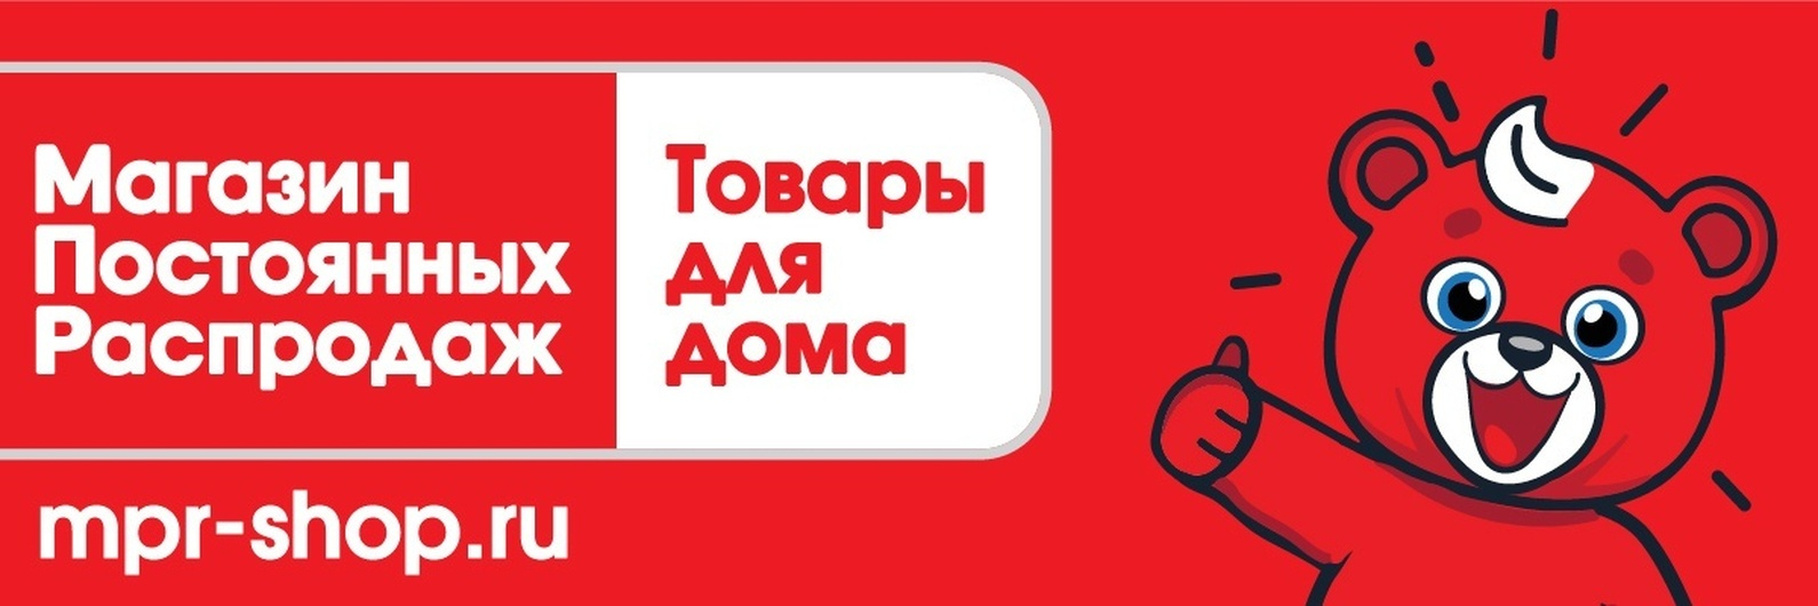 Логотип МПР